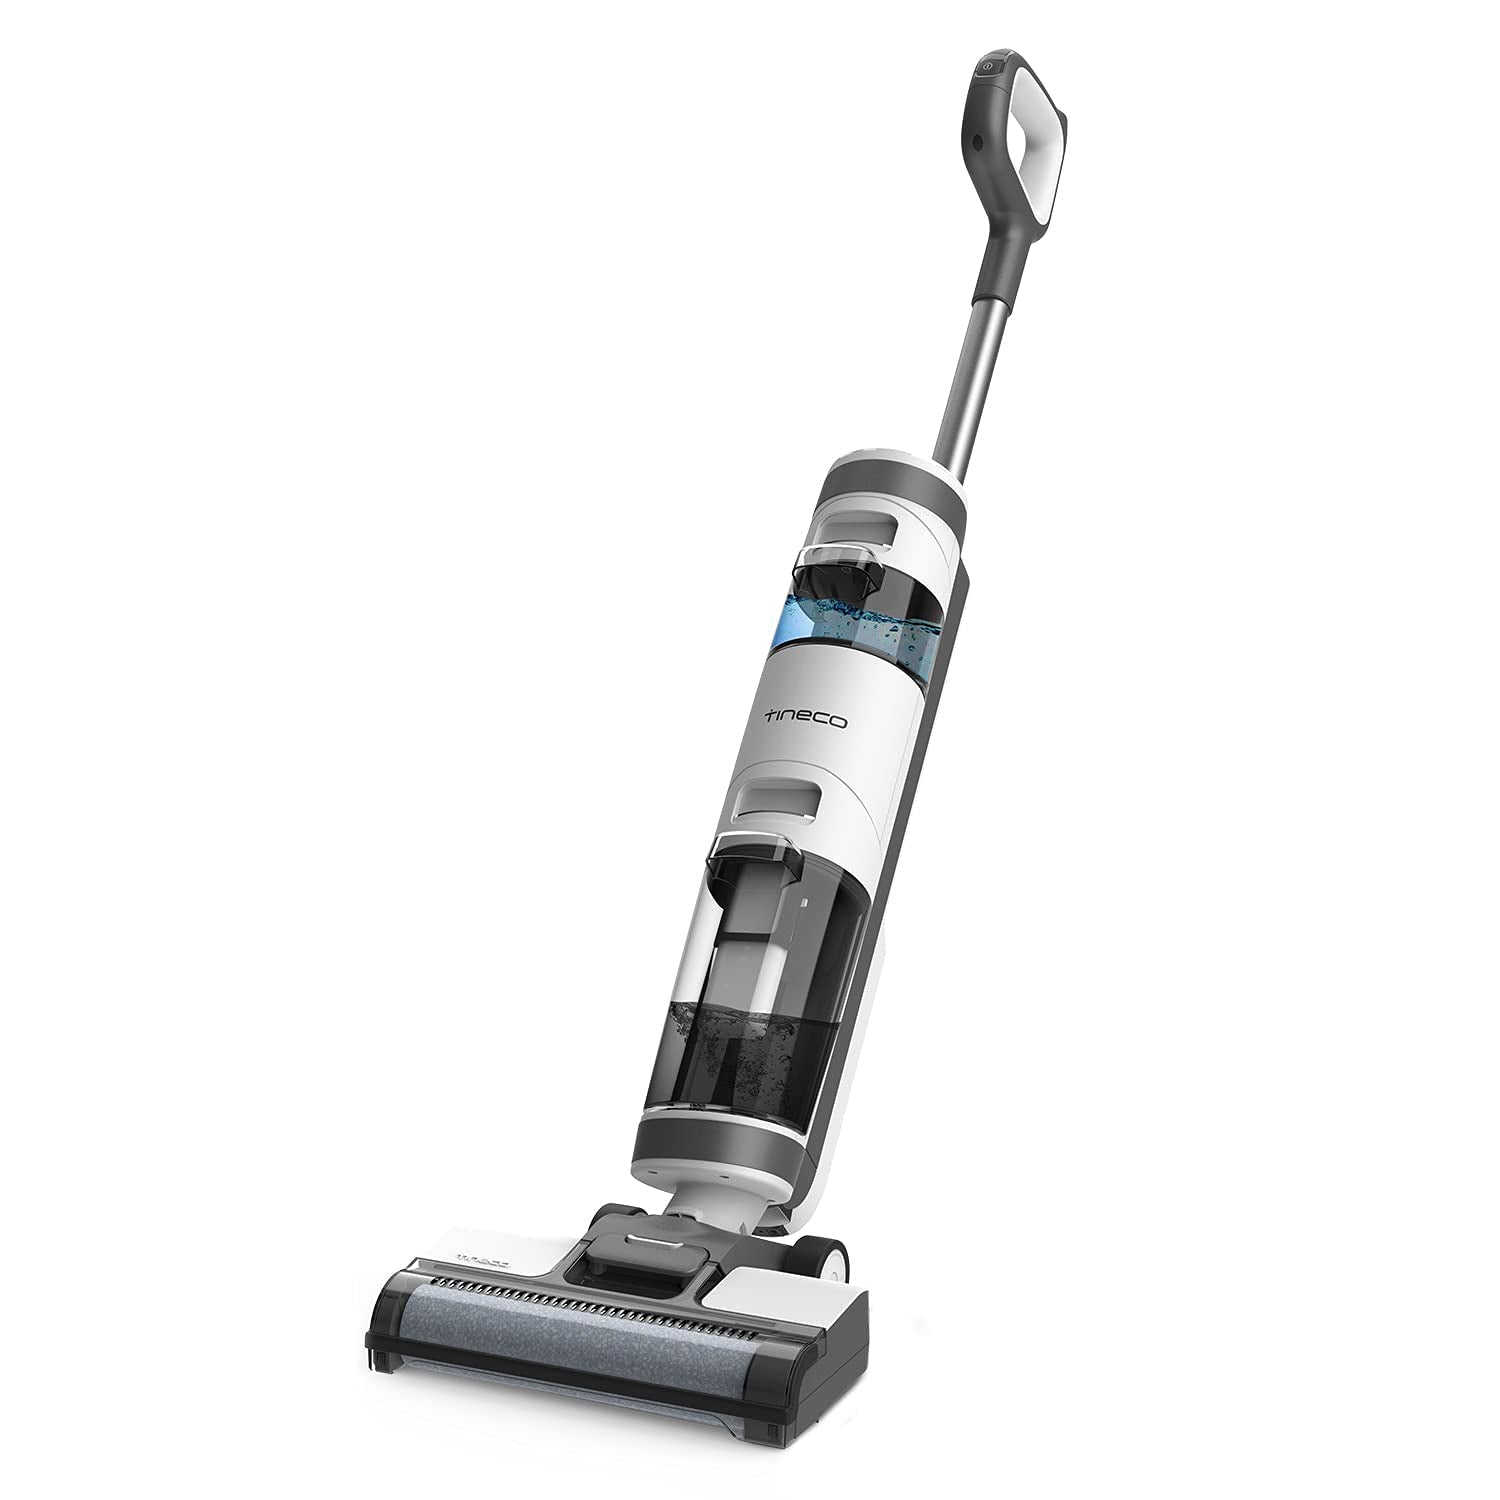 Tineco - iFloor Breeze Wet/Dry Hard Floor Cordless Stick Vacuum BRAND NEW!